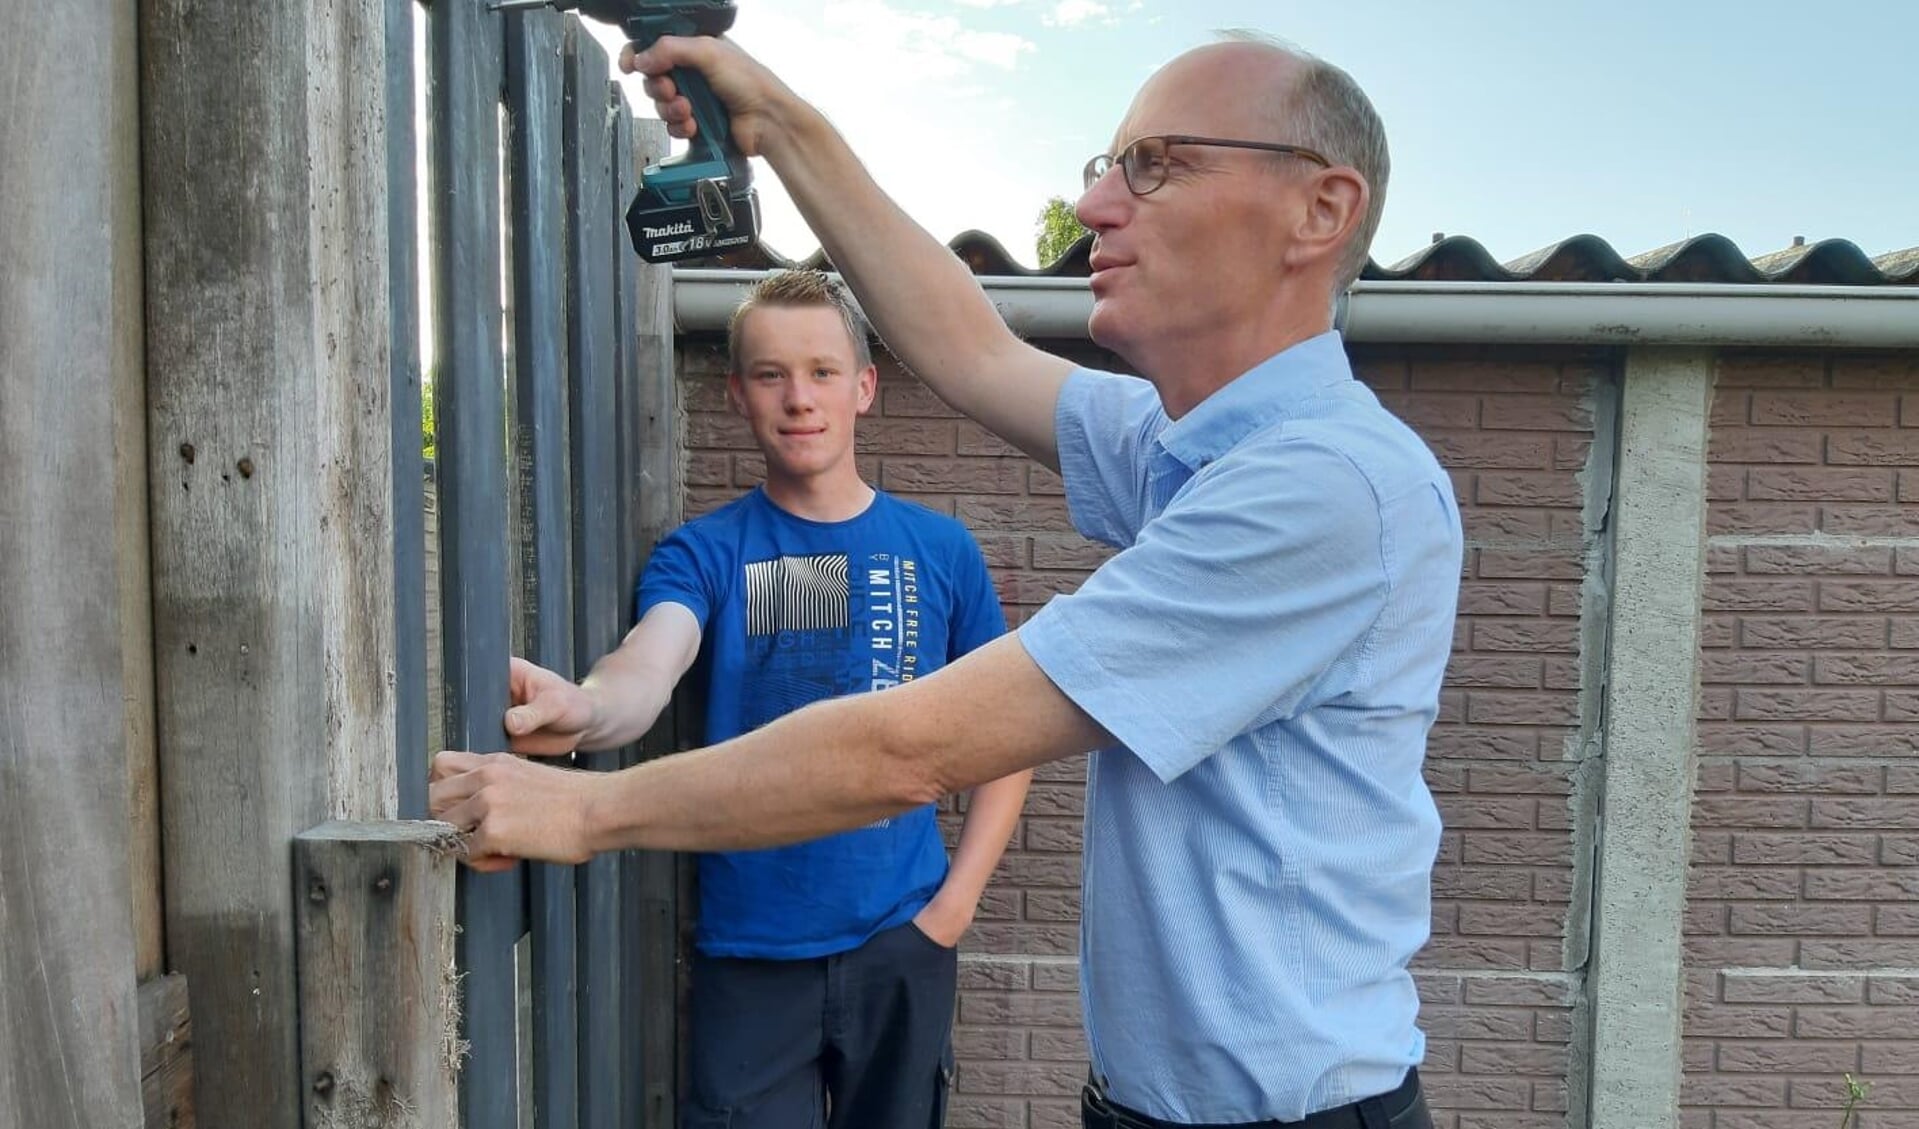 Dirk Baron en zijn zoon Harm plaatsten samen een schutting bij een alleenstaande dame die om hulp had gevraagd via HiP. (foto: pr)